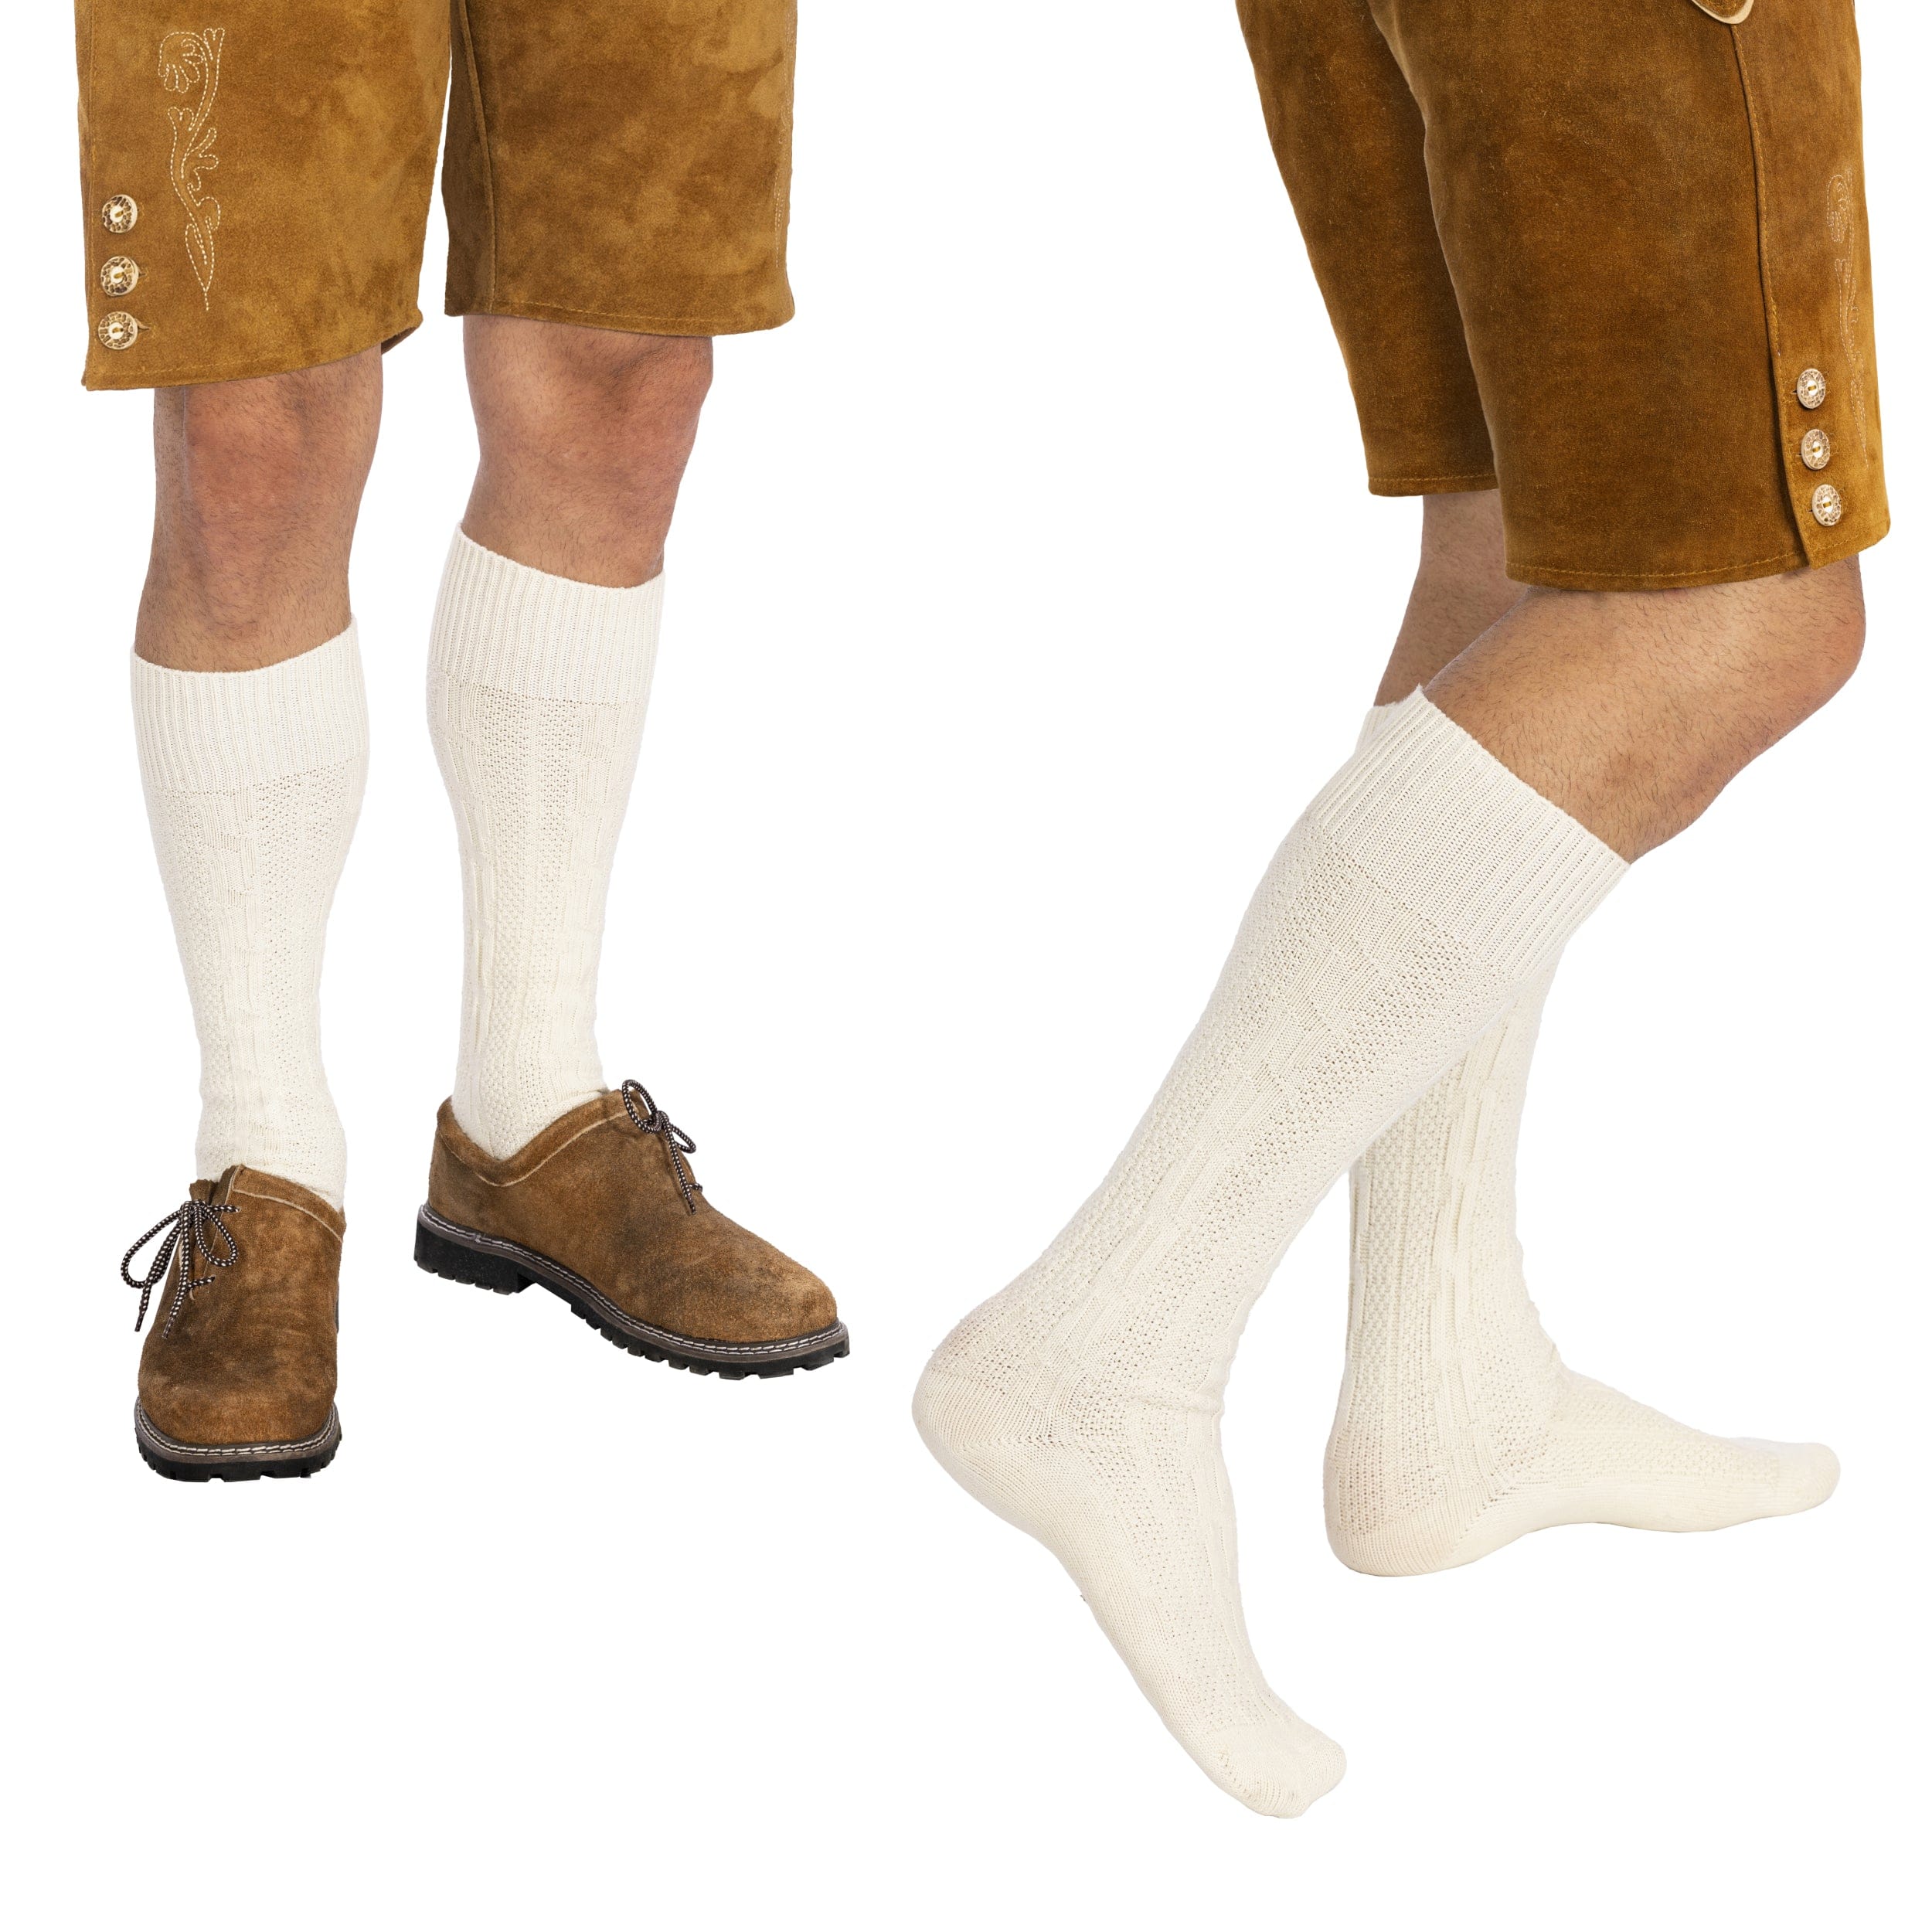 Bavaria Trachten Socks Men Loferl White Oktoberfest 